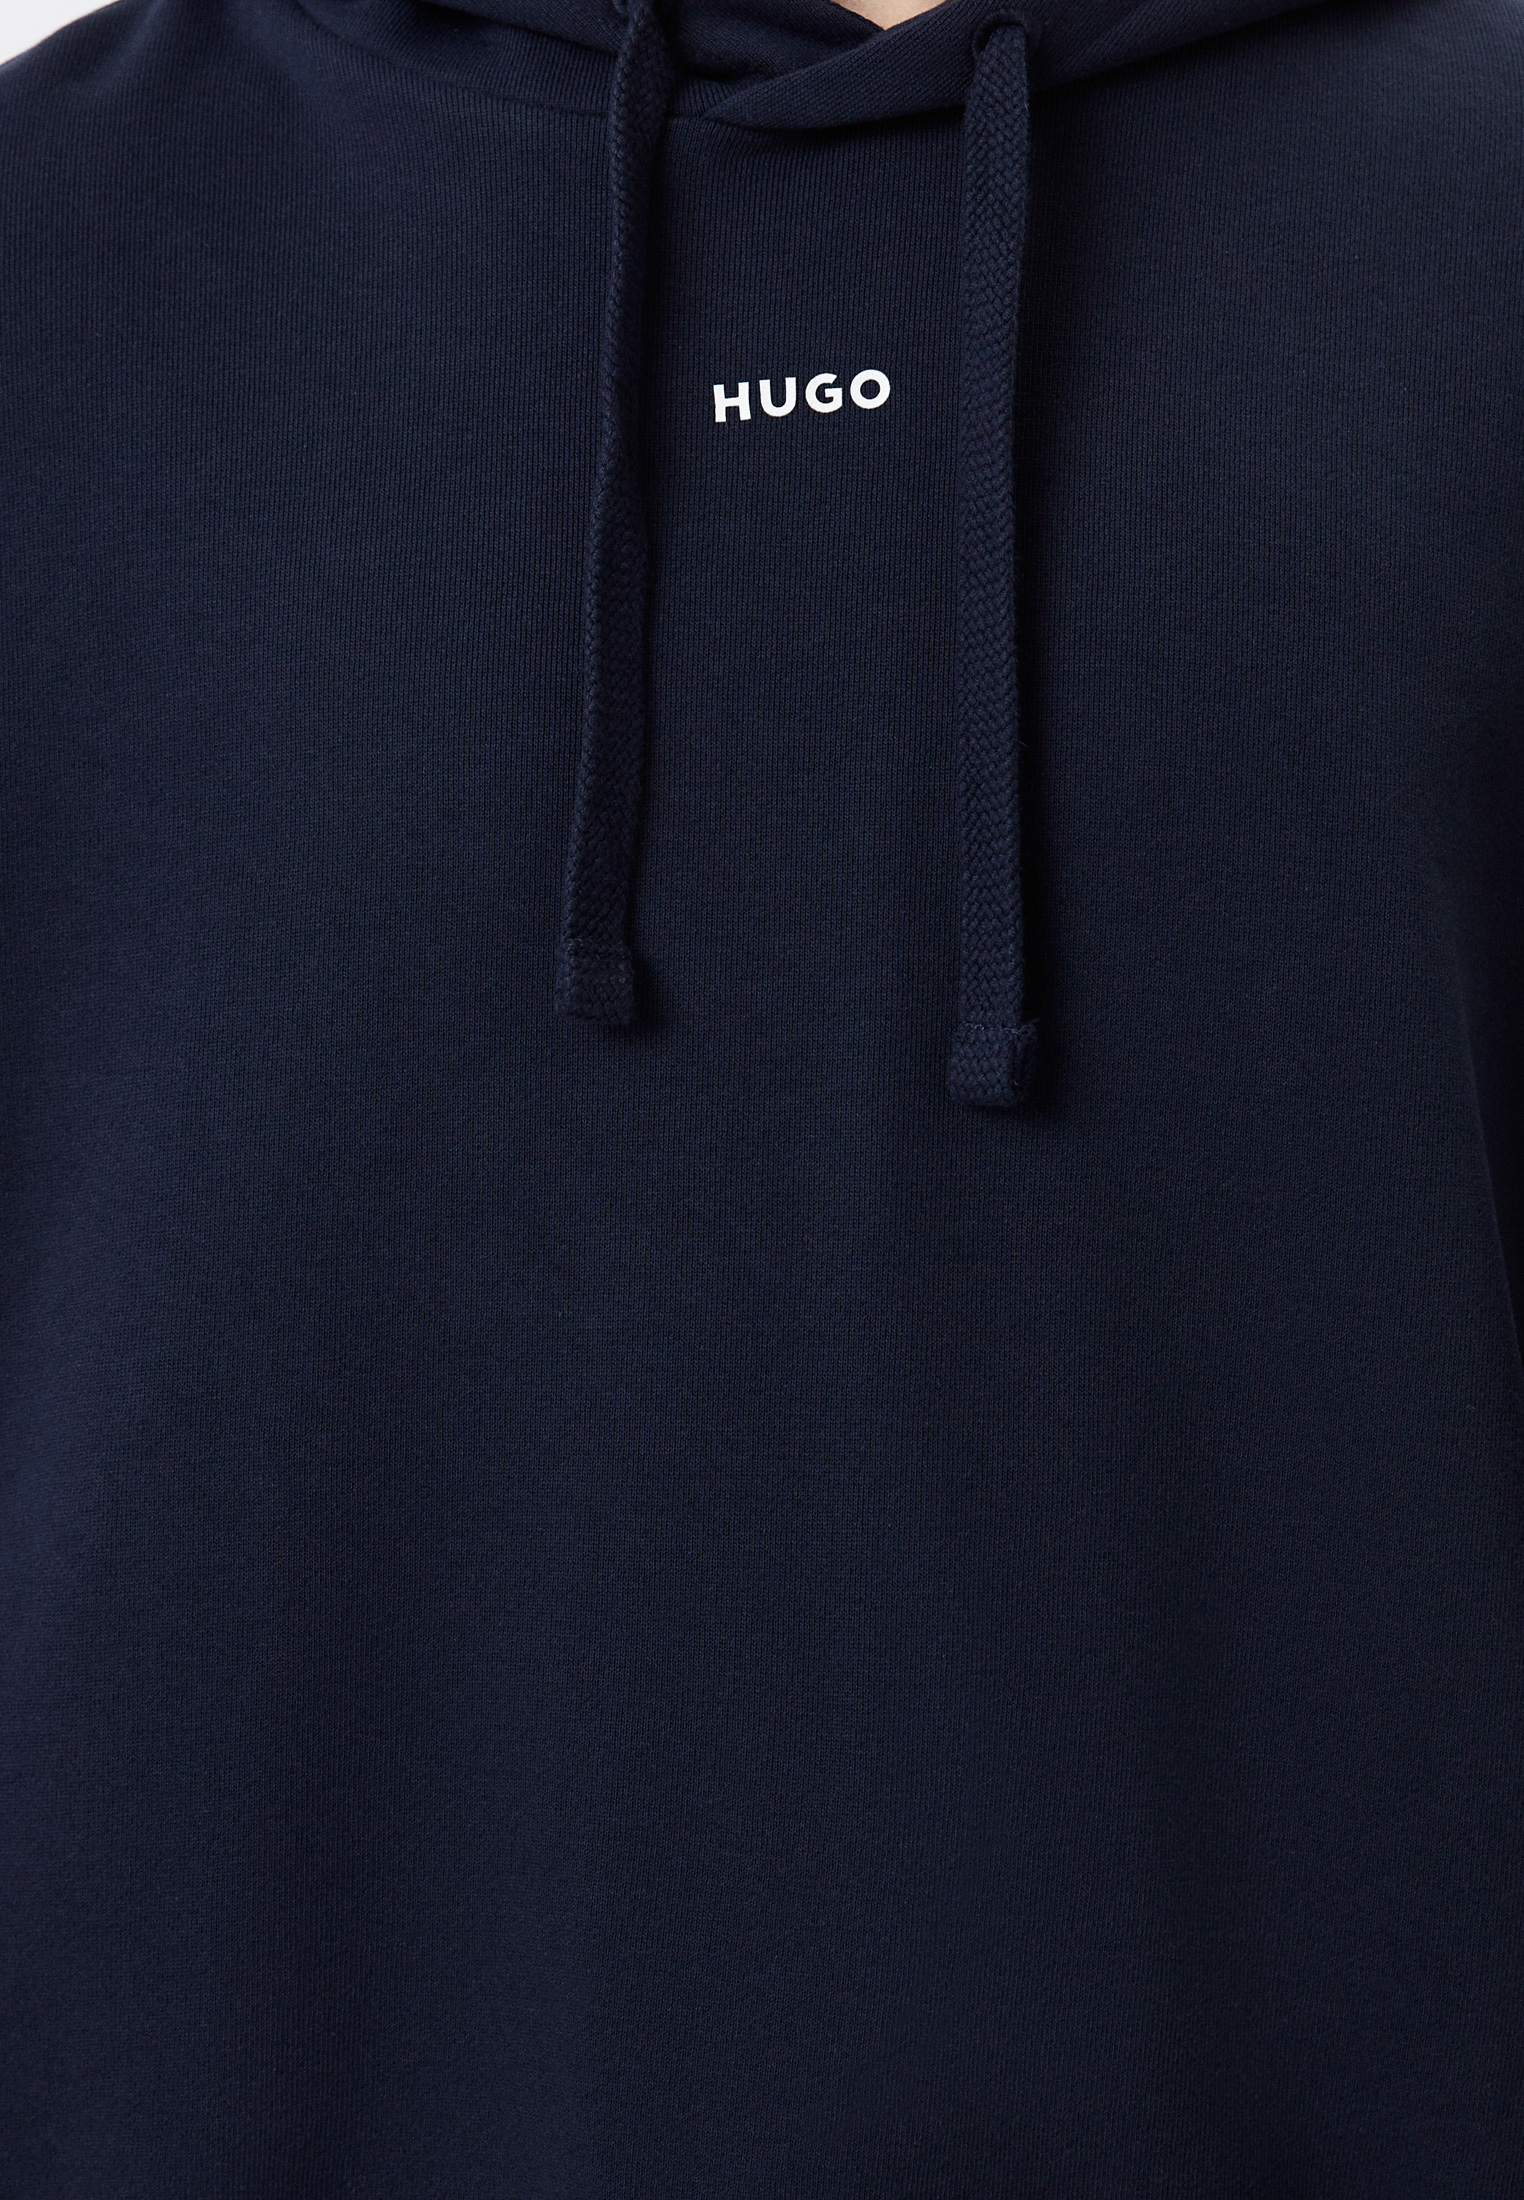 Sports hugo. Спортивный костюм Hugo. Спортивный костюм Hugo мужской. Костюм спортивный Hugo Full House. Hugo костюм спортивный оливковый.